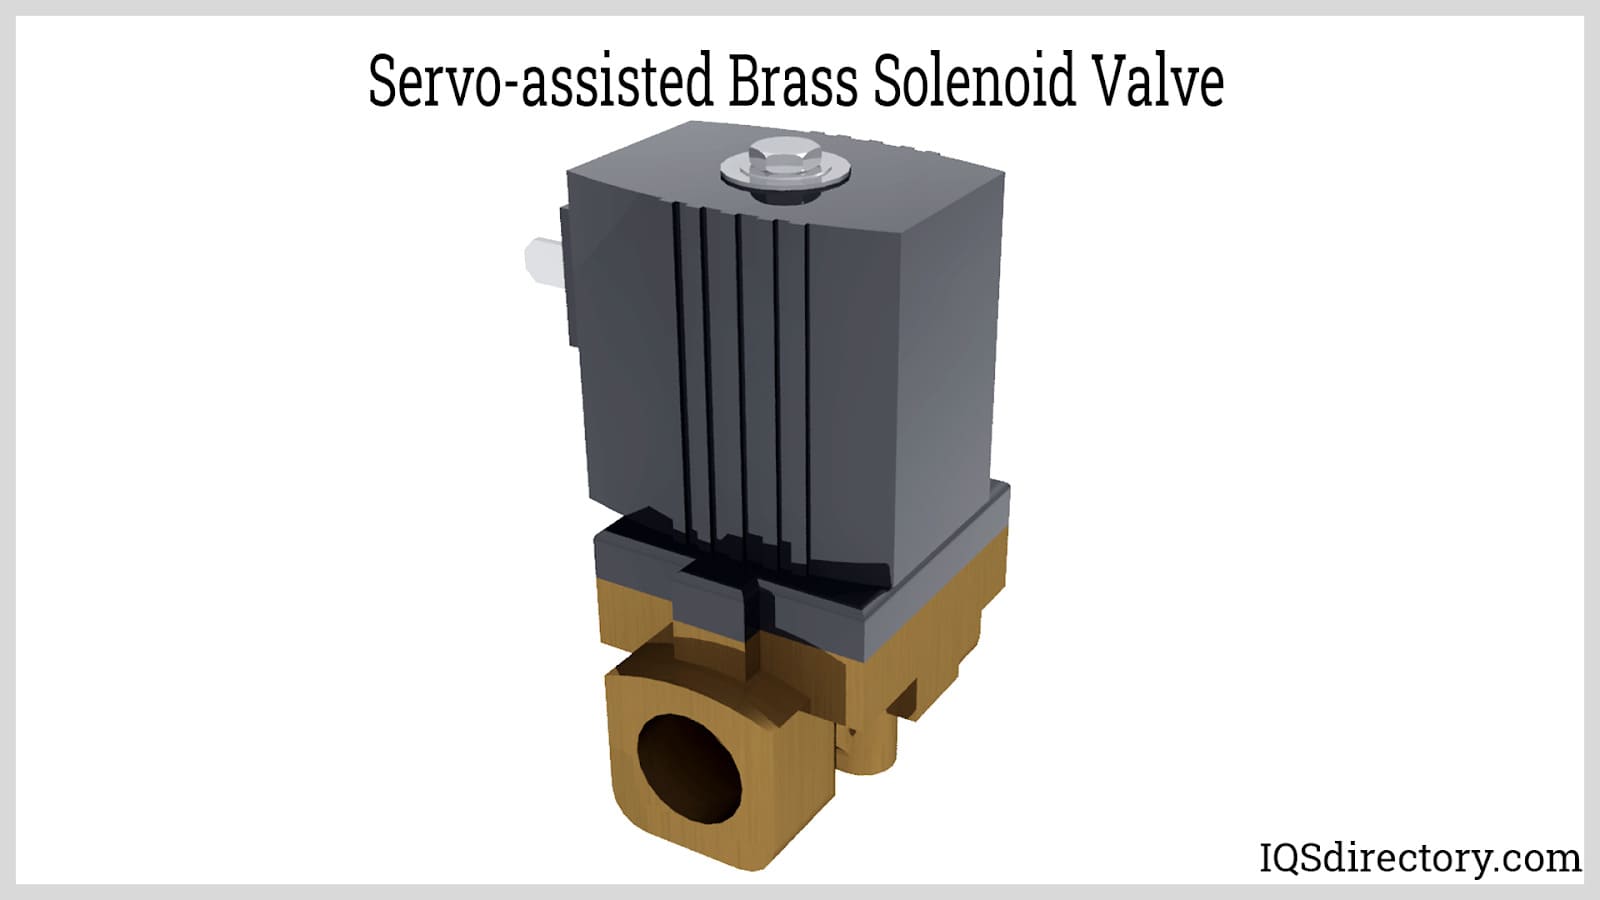 Servo-assisted Brass Solenoid Valve